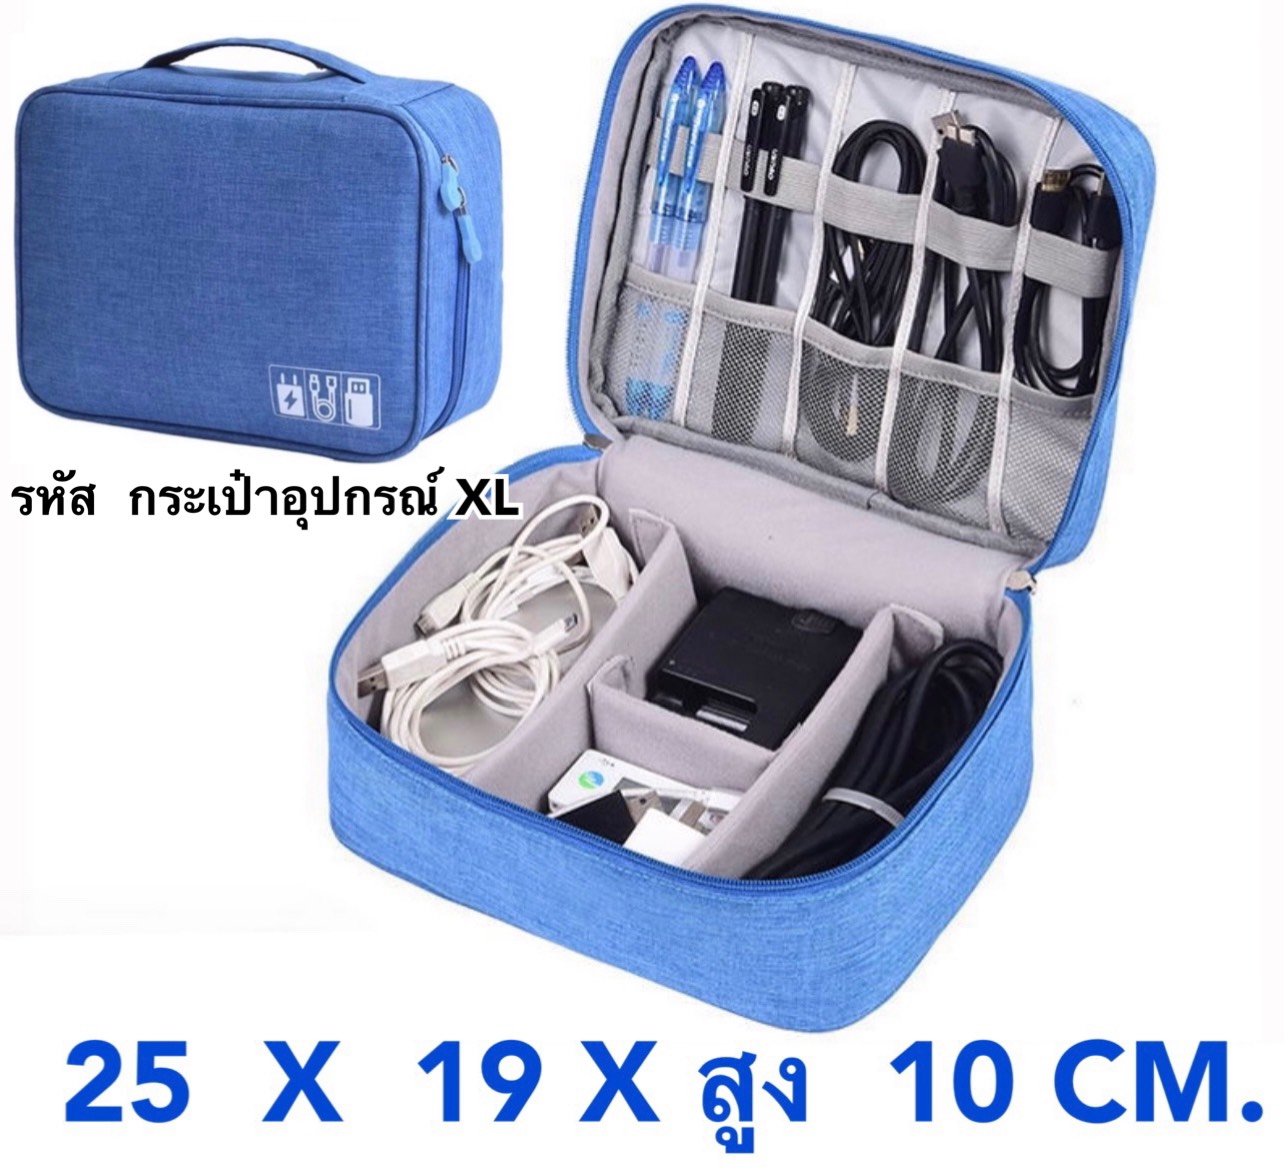 กระเป๋าเก็บอุปกรณ์มือถือ โน๊ตบุ๊ค หูฟัง 96 ฿  6 สี กันน้ำ กันฝุ่น ขนาดใหญ่ 24.50  X  10 X 8 CM. กระเป๋าจัดระเบียบ พกพาสะดวก กระเป๋าอเนกประสงค์